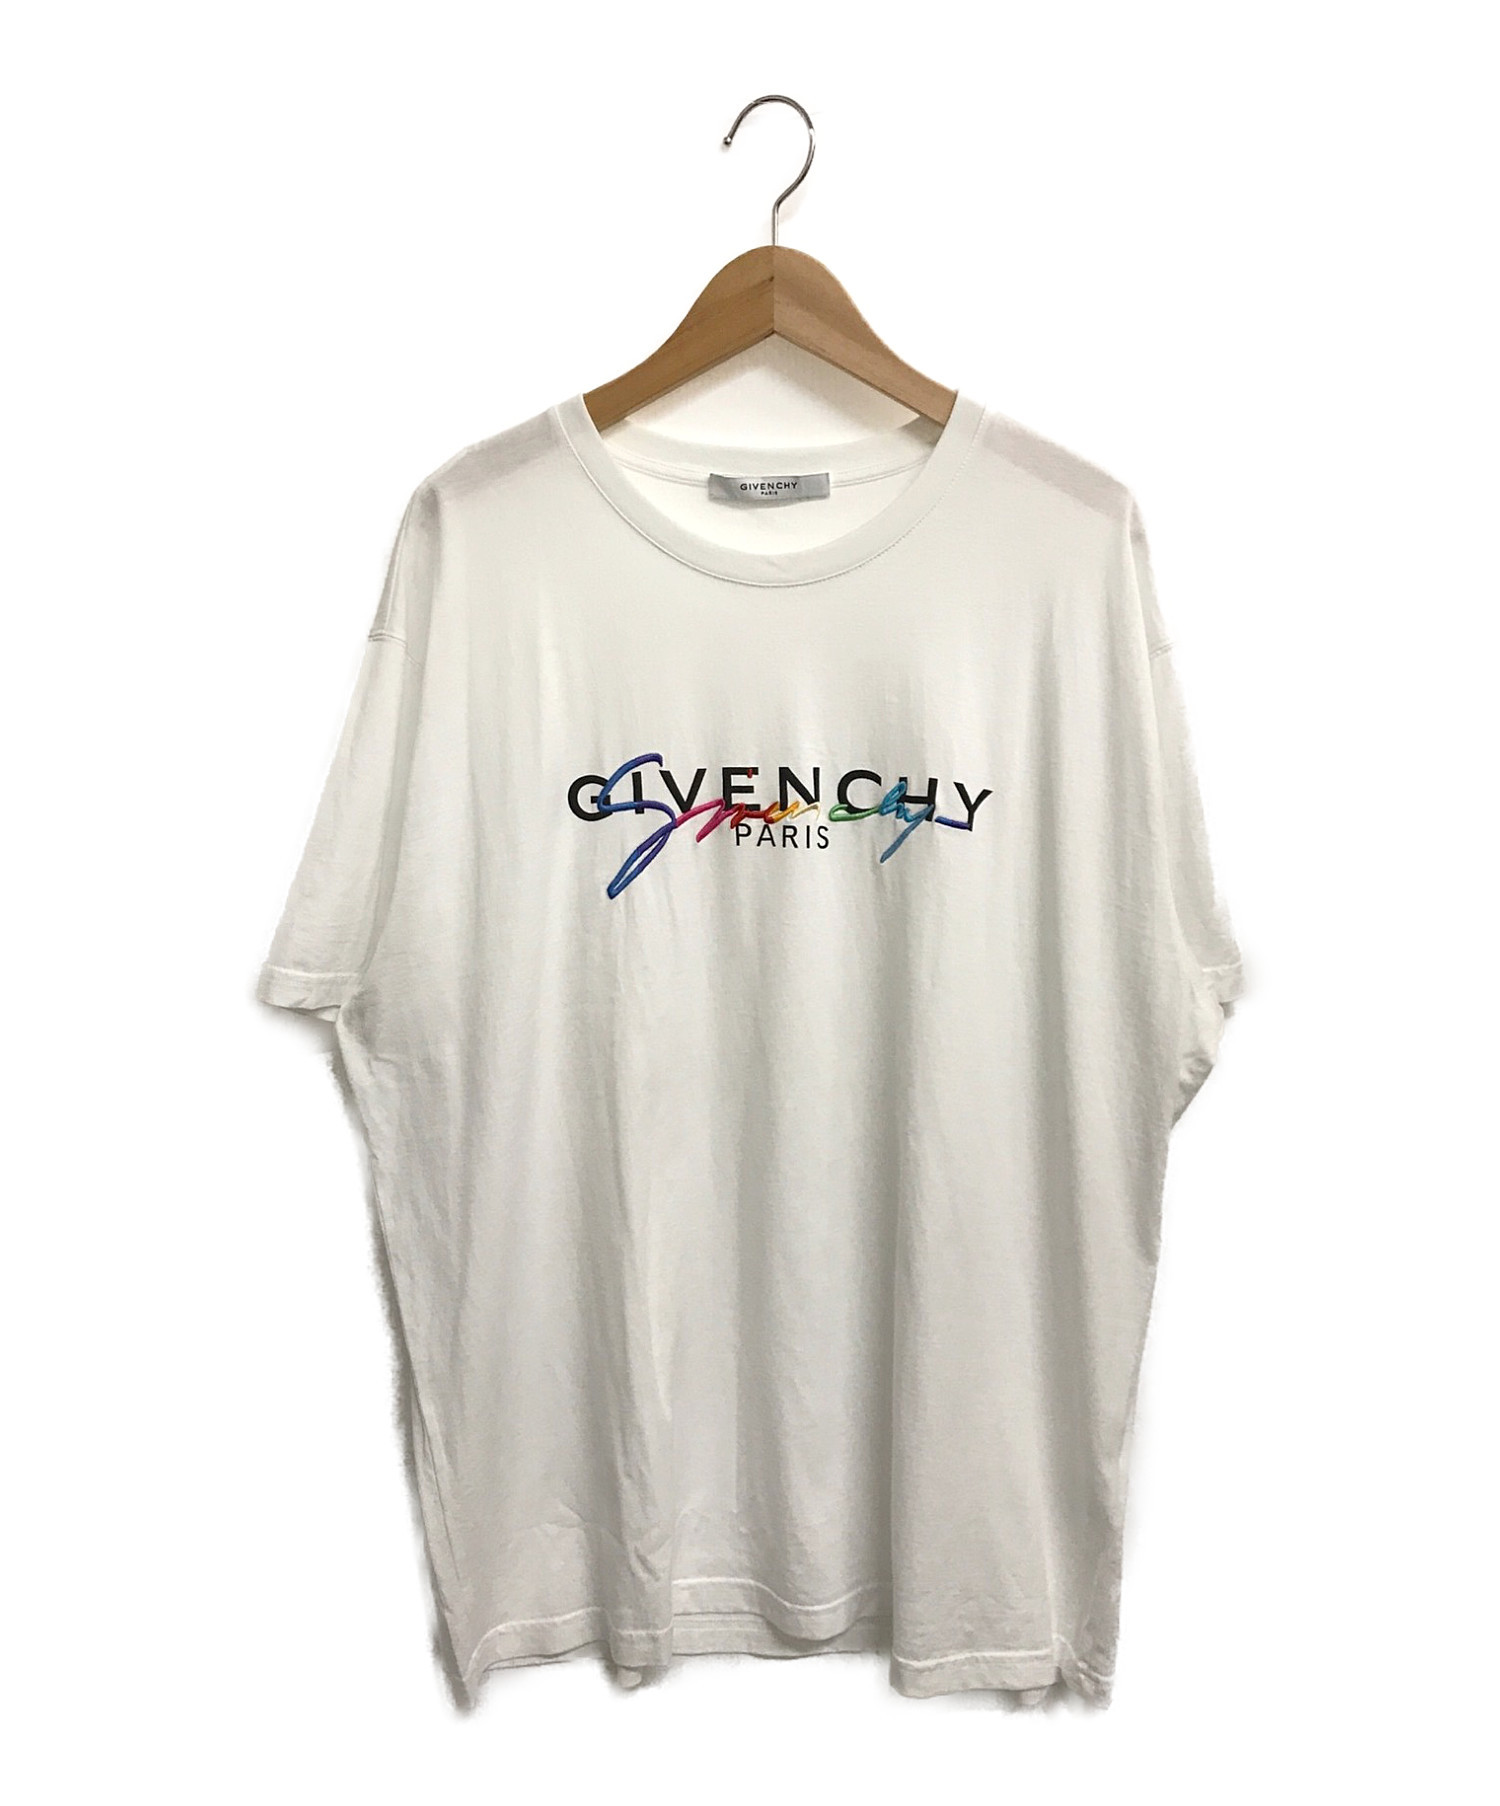 GIVENCHY (ジバンシィ) シグネチャーロゴプリントTシャツ ホワイト サイズ:XL